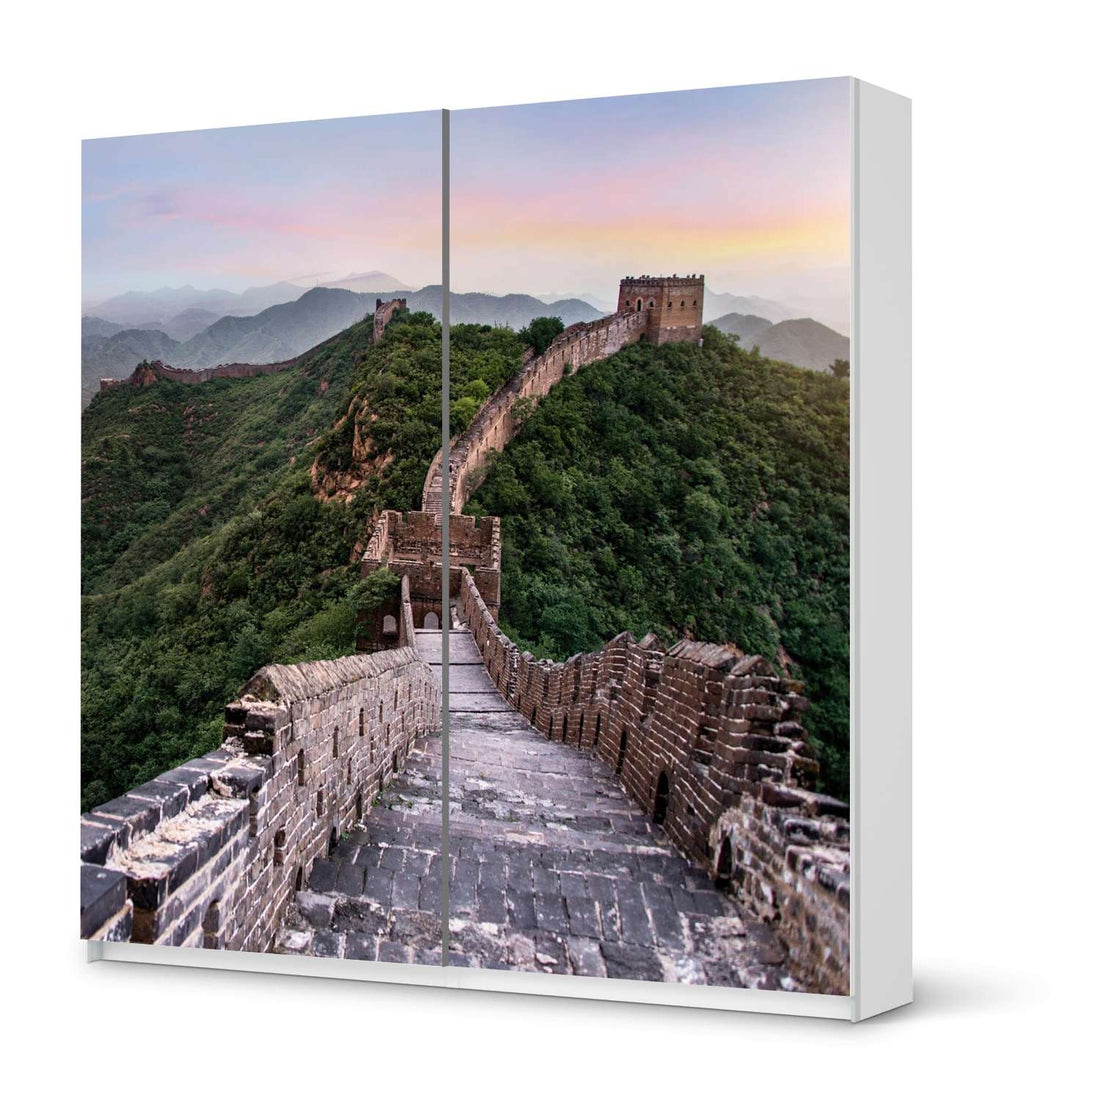 Möbel Klebefolie The Great Wall - IKEA Pax Schrank 201 cm Höhe - Schiebetür - weiss